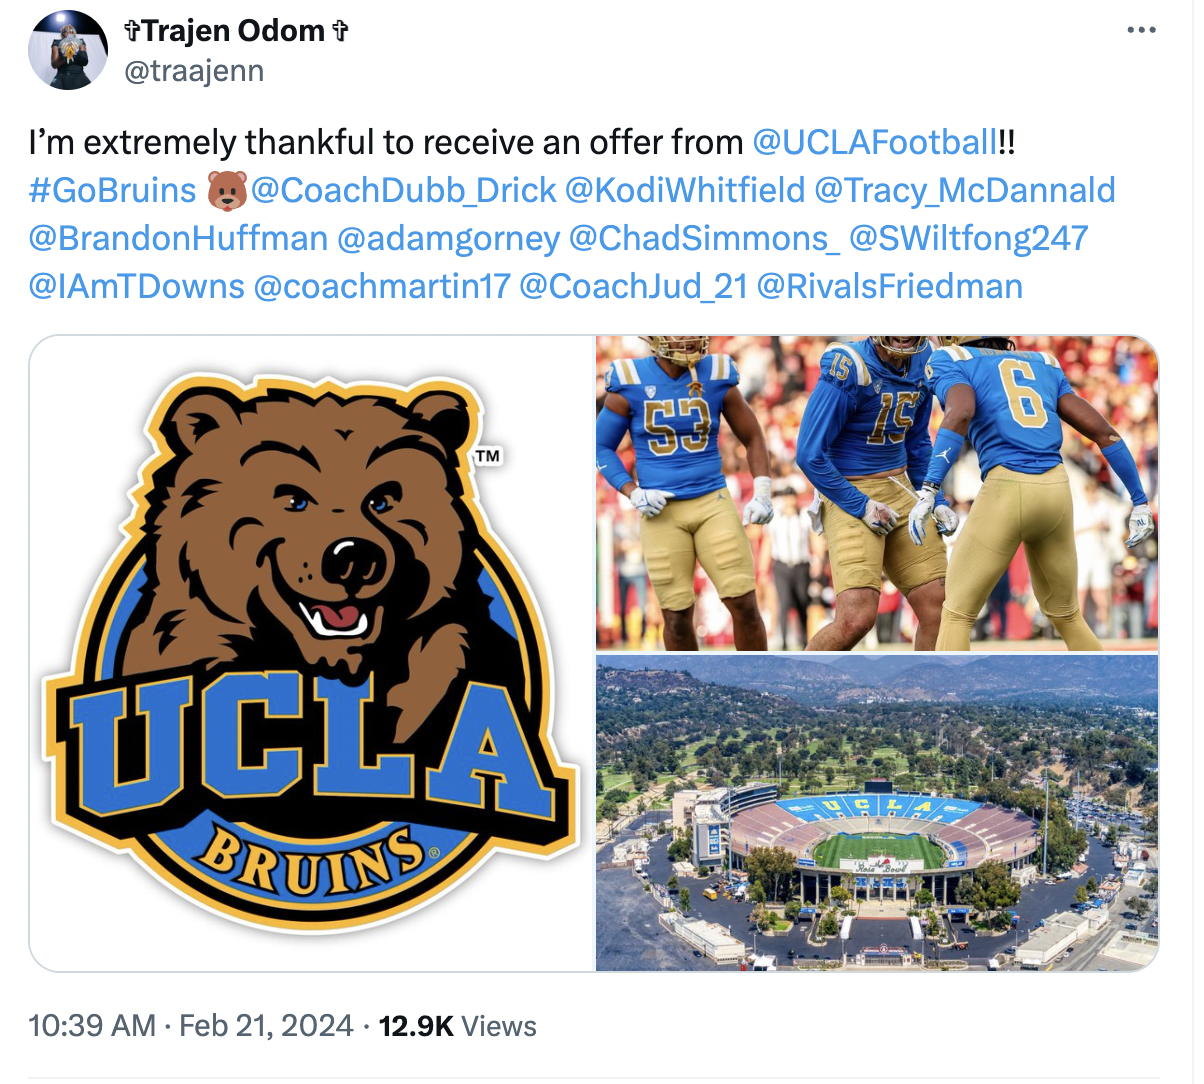 UCLA Football Offers Trajen Odom